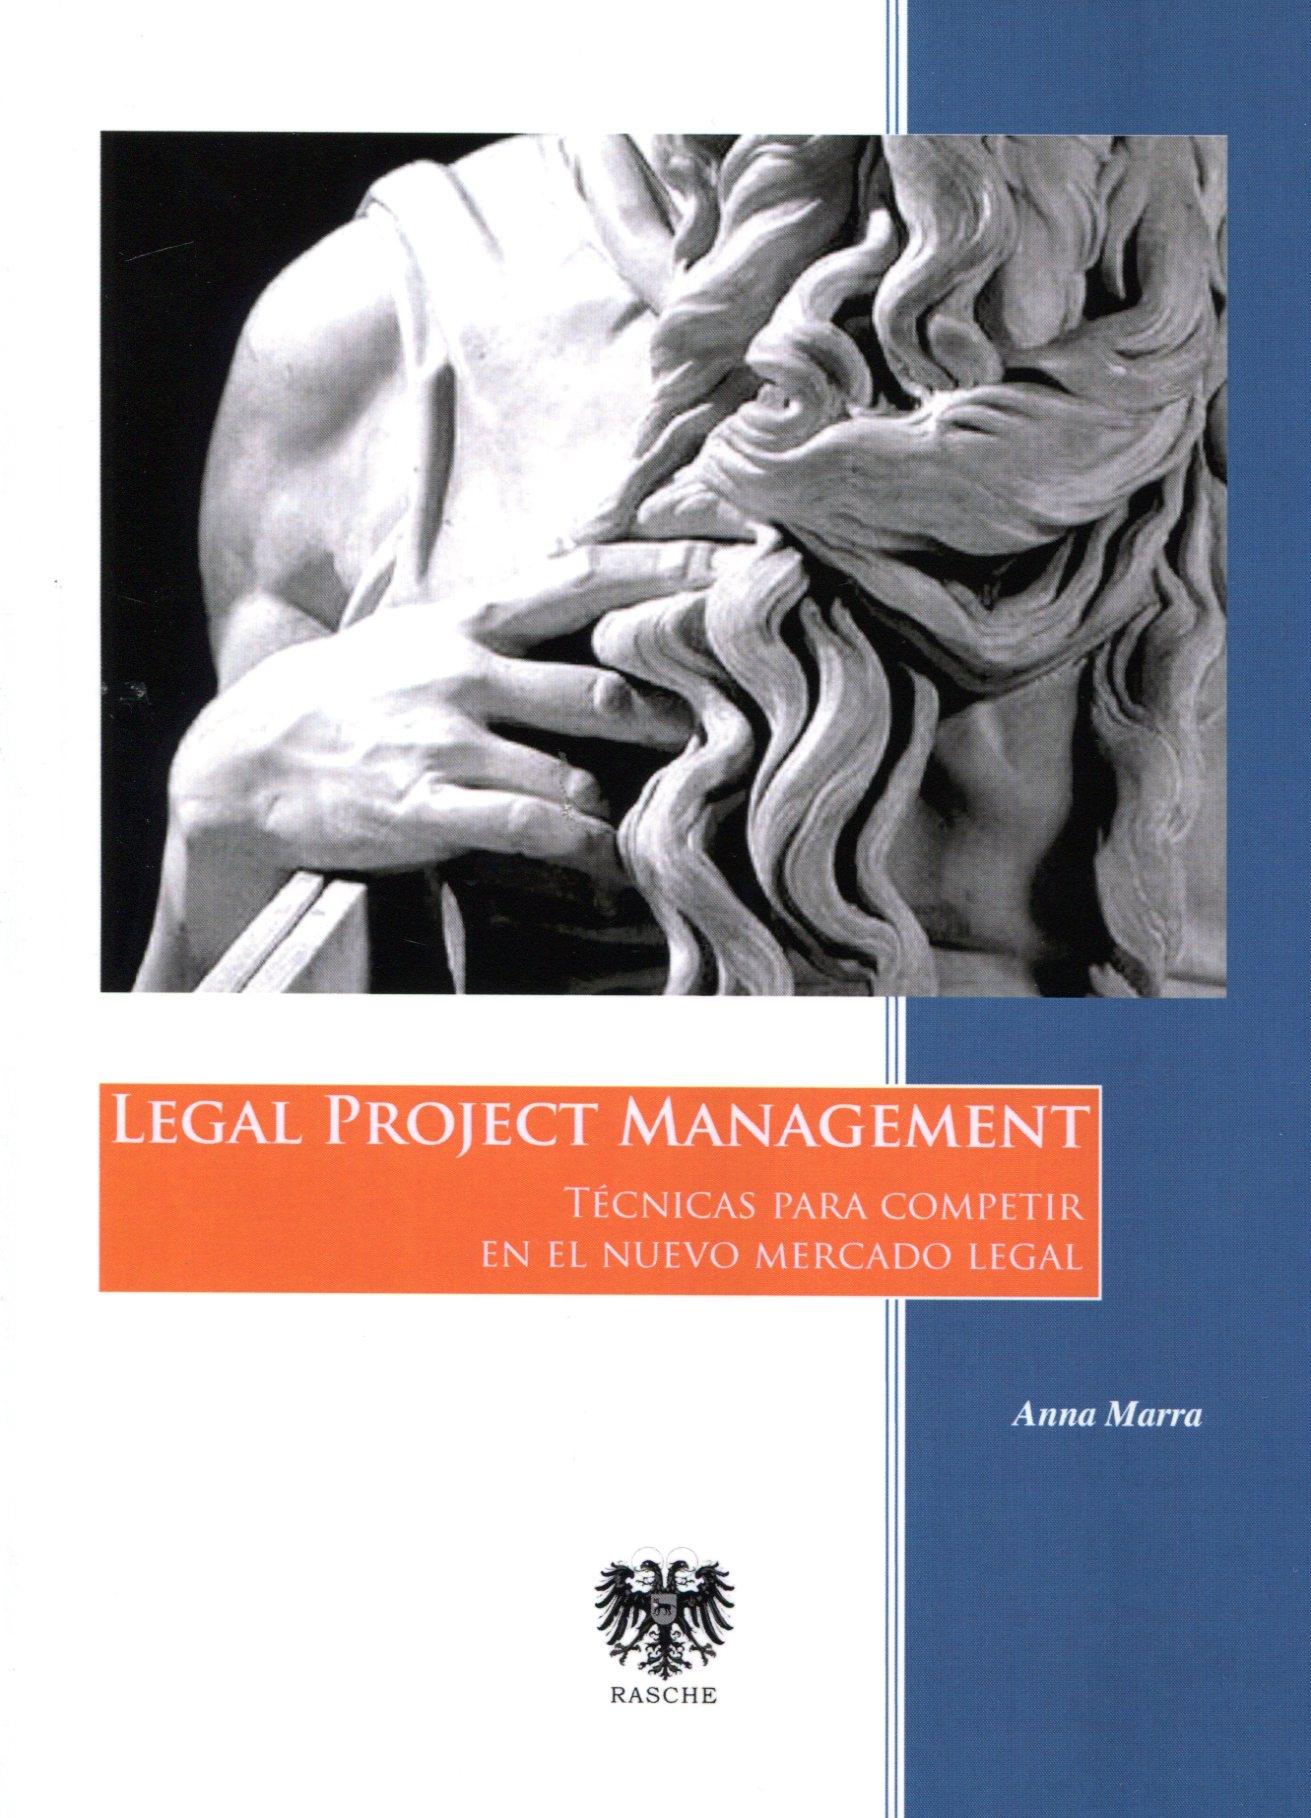 Legal Project Management "Técnicas para Competir en el Nuevo Mercado Legal."